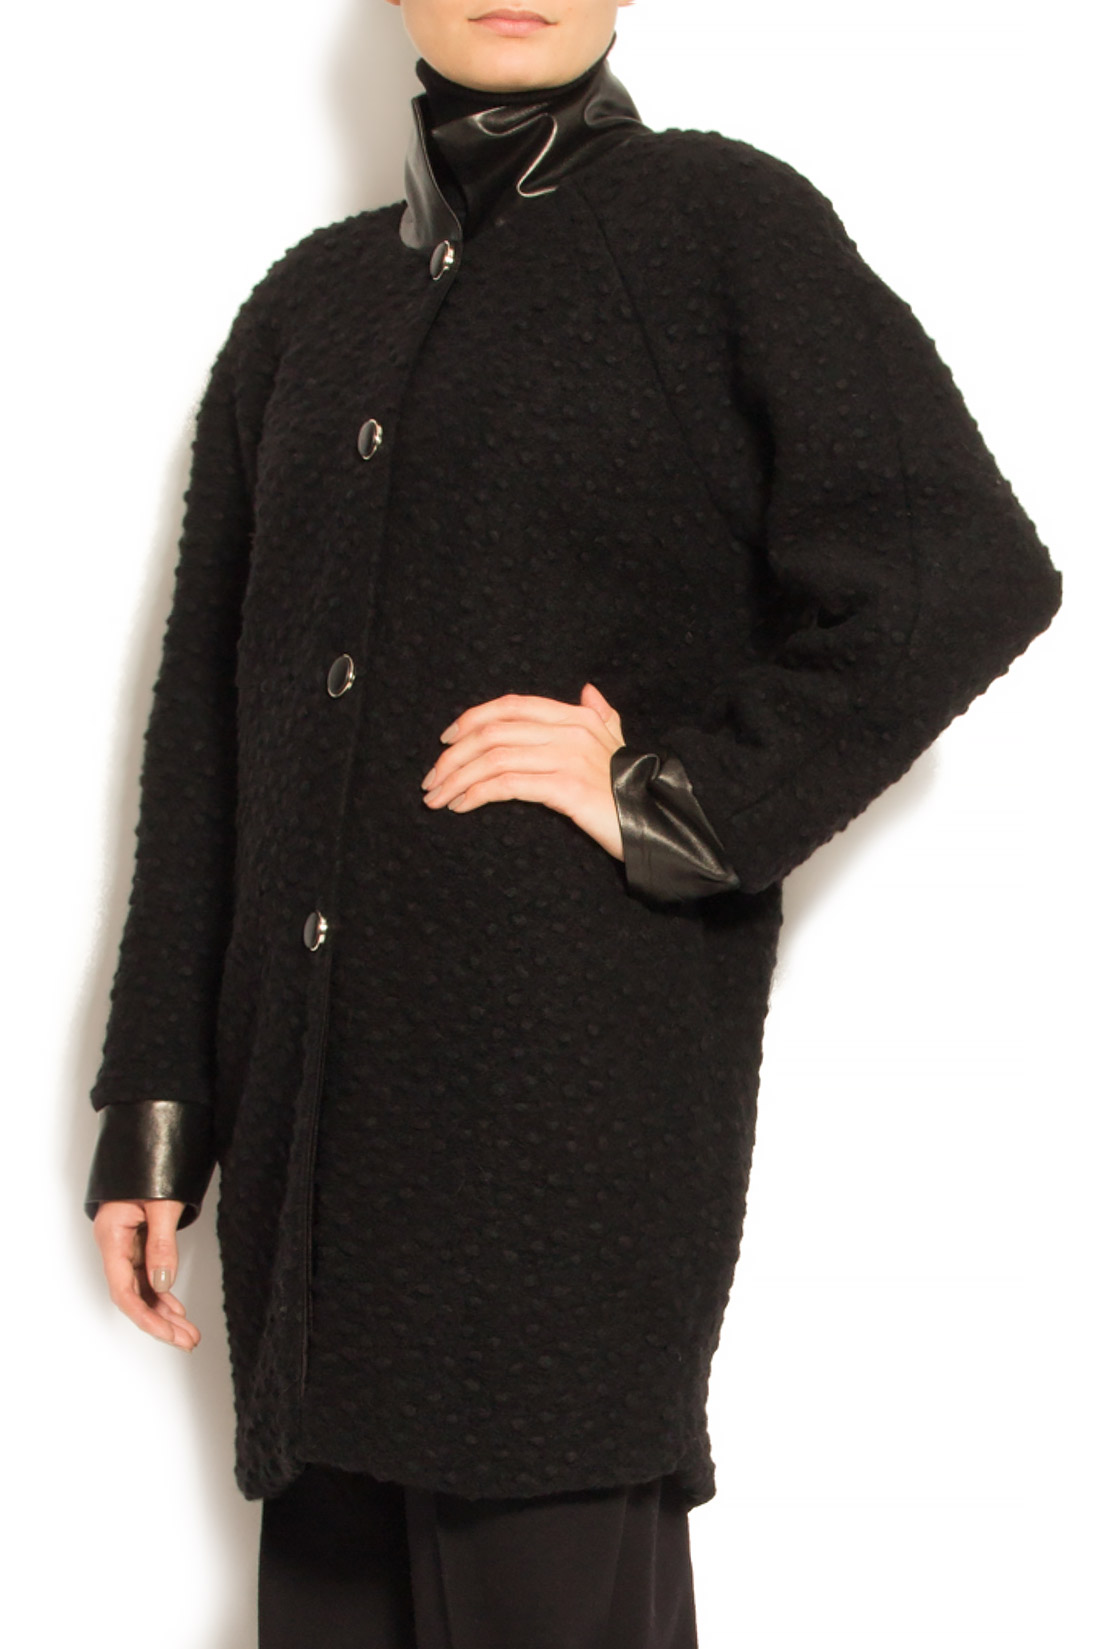 Palton din lana cu insertii din piele ecologica Elena Perseil imagine 1